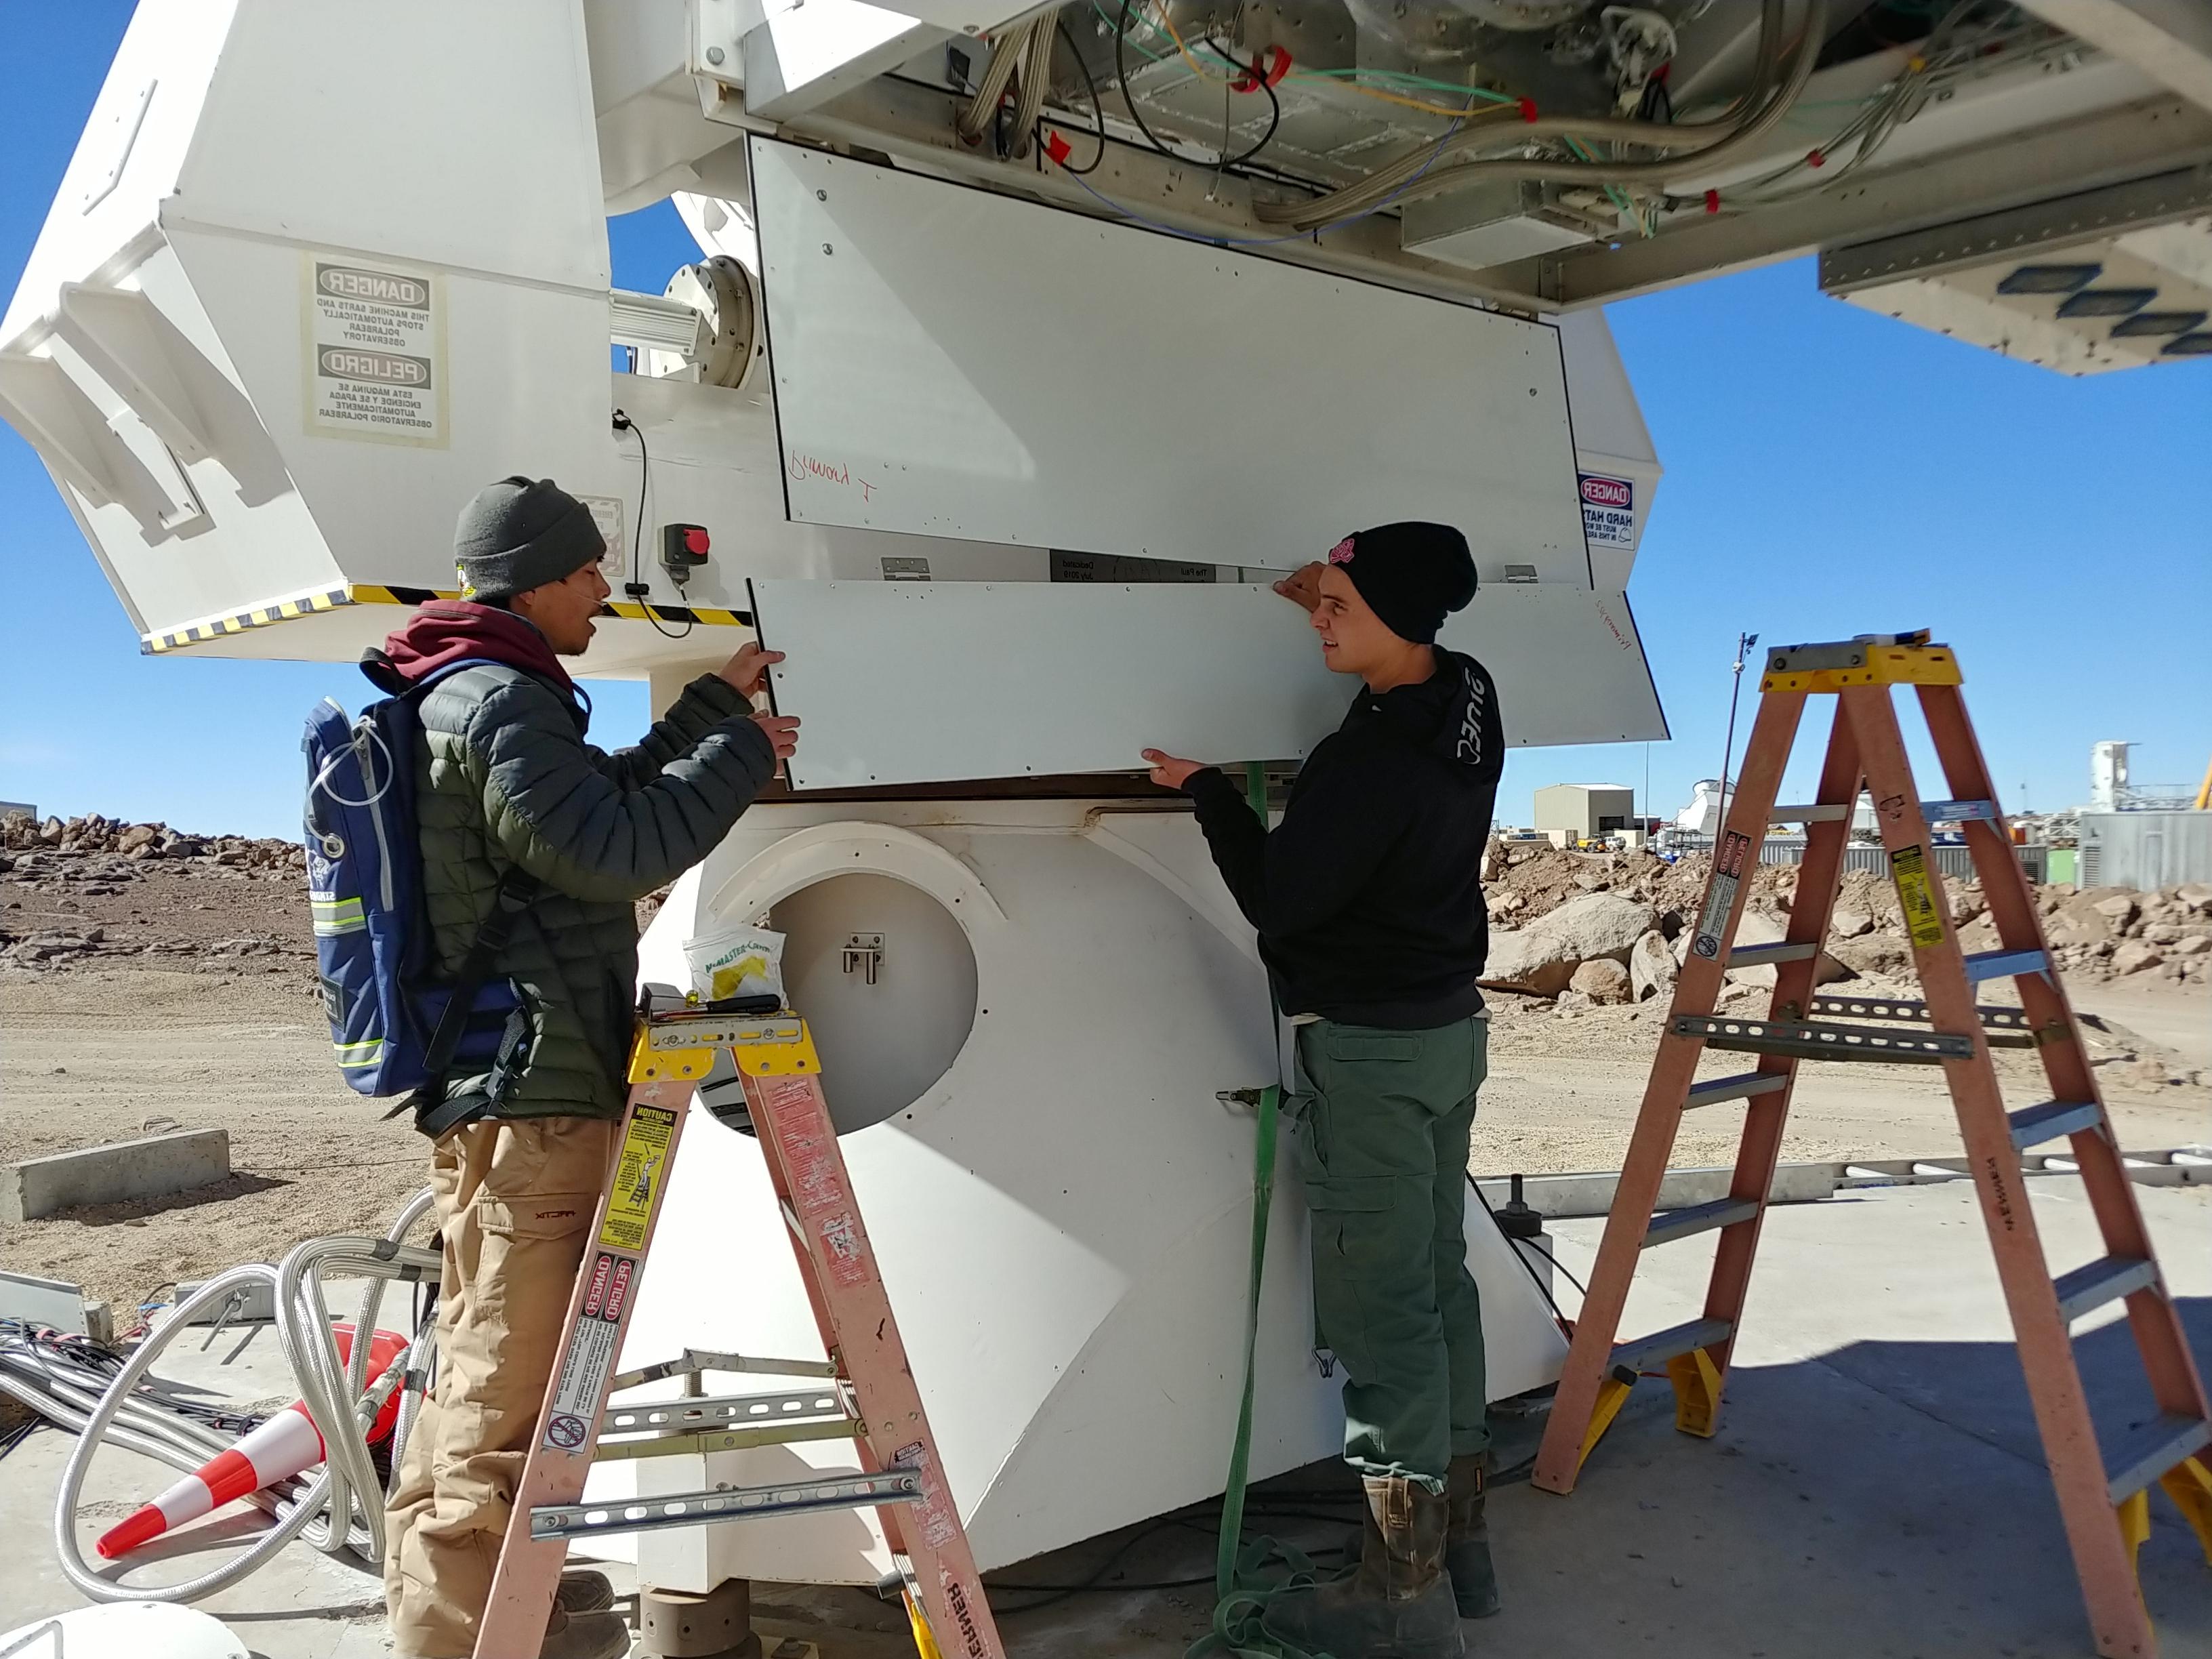 韦斯特蒙特大学的学生雅各布·纳尔逊和迈克尔·卢在智利的西蒙斯阵列研究望远镜